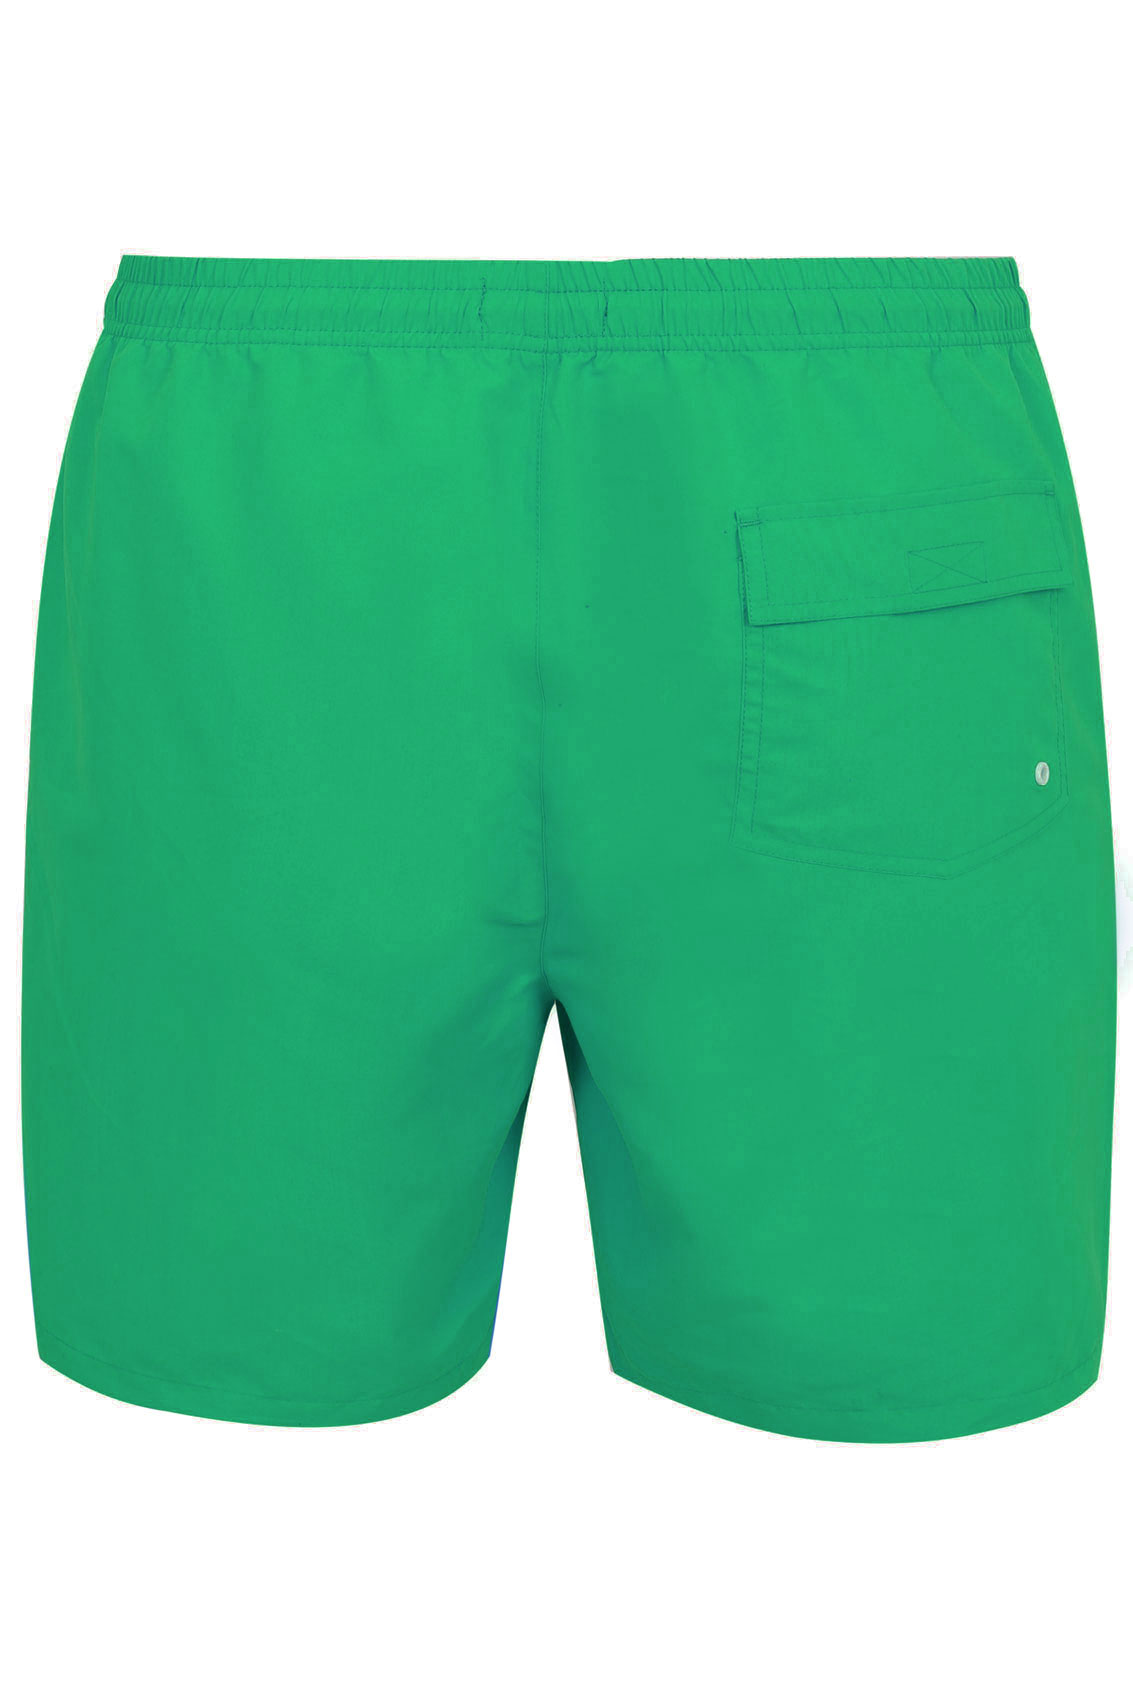 BadRhino Green Swim Shorts